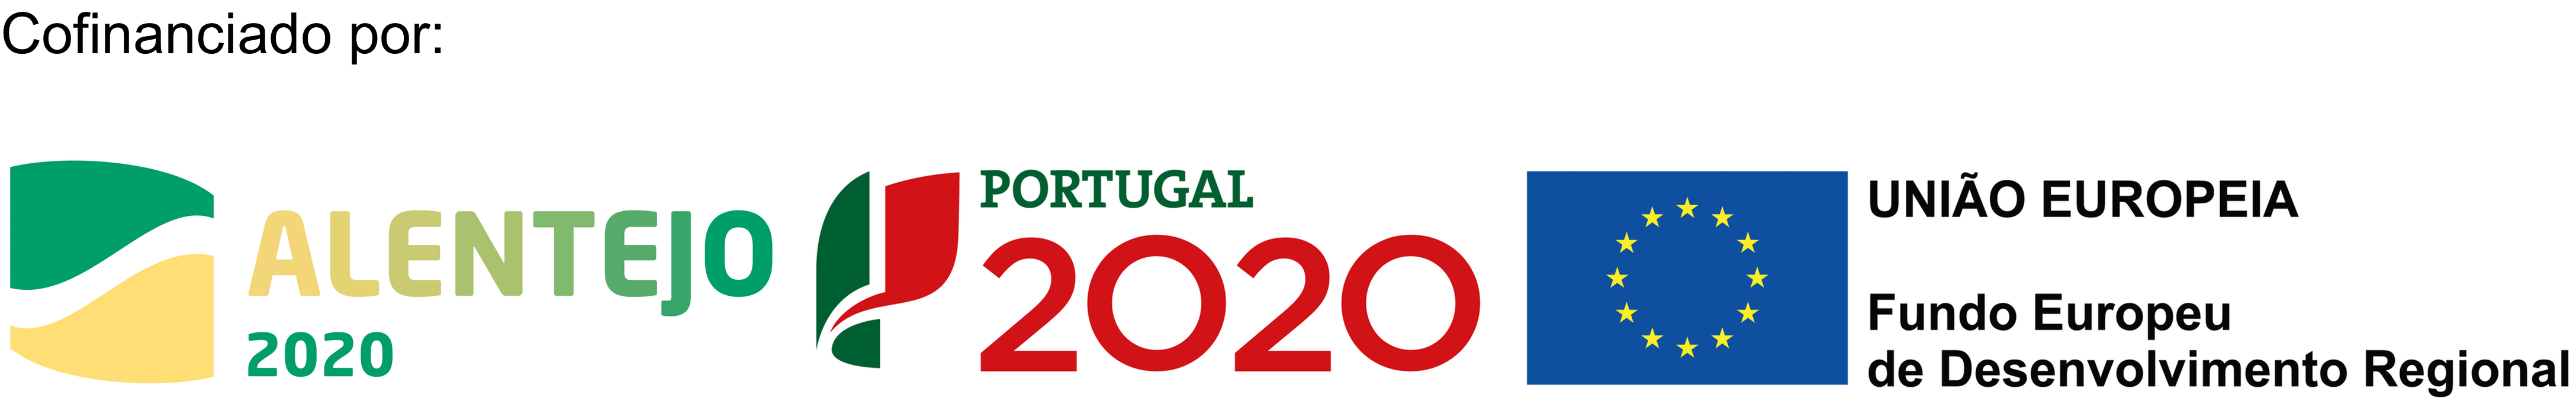 Portugal 2020 - QPME